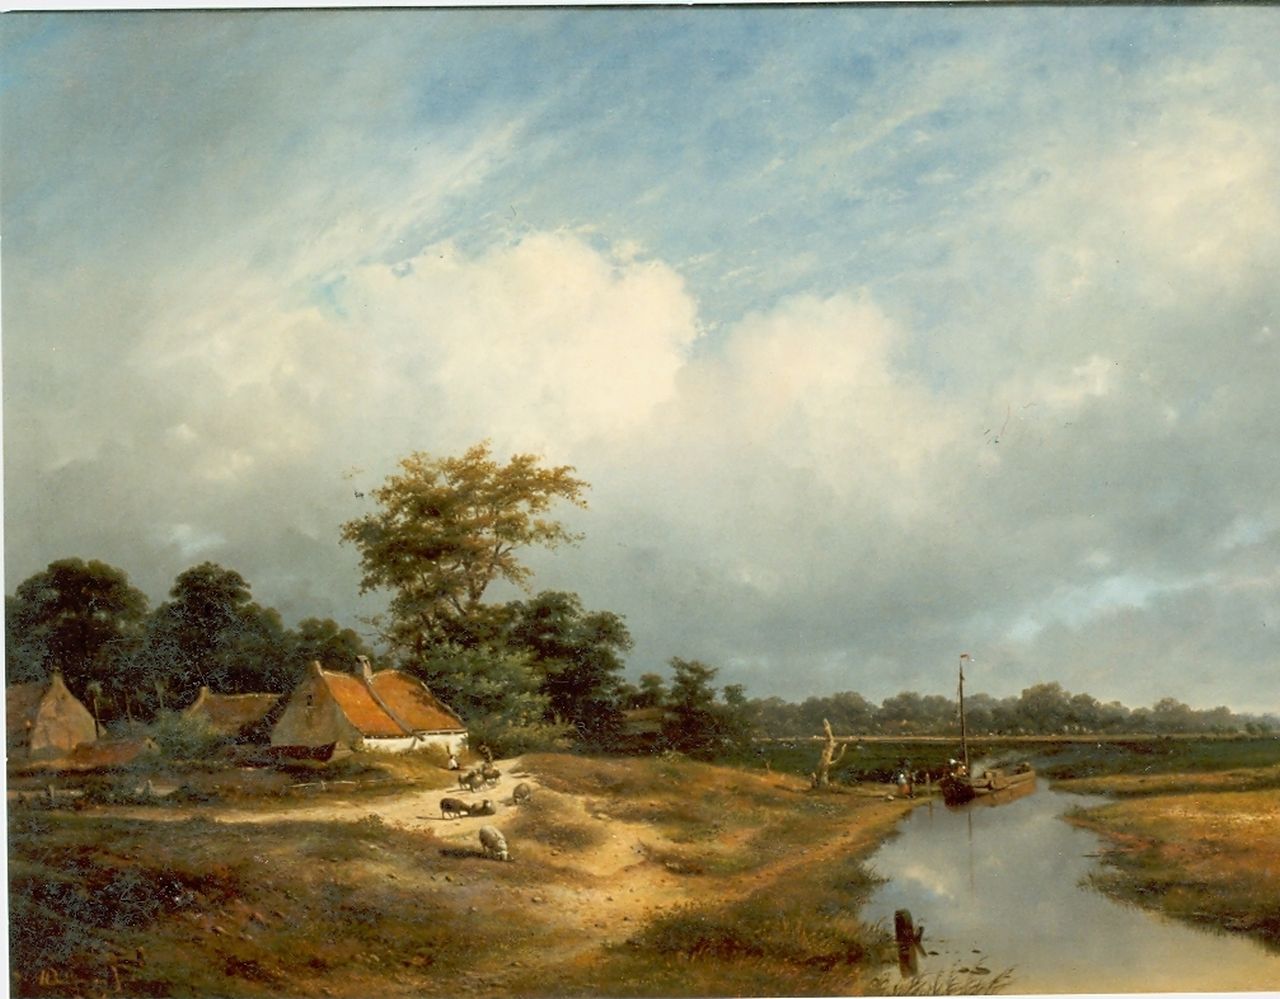 Sande Bakhuyzen H. van de | Hendrikus van de Sande Bakhuyzen, A shepherd and his flock by a farm, oil on canvas 74.2 x 100.0 cm, signed l.l. and dated 1852